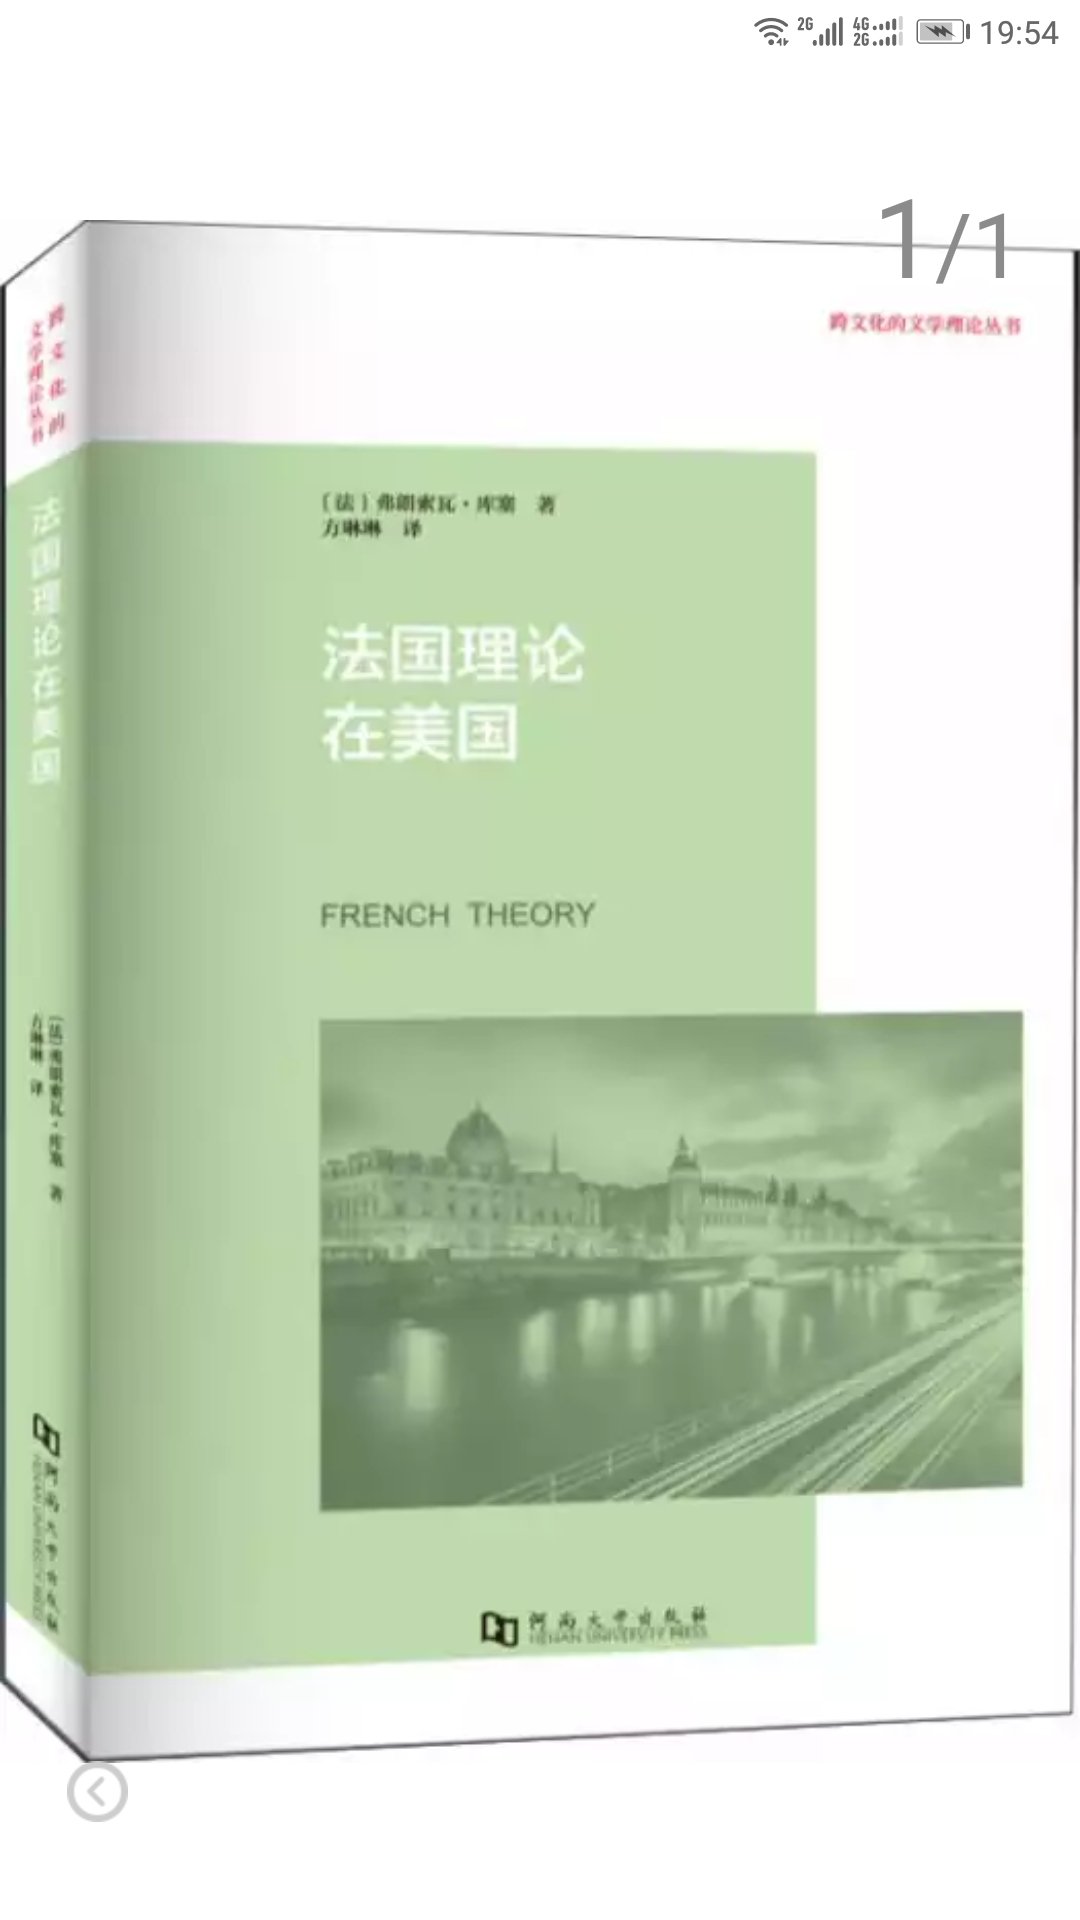 法国理论 作为理论的法国理论